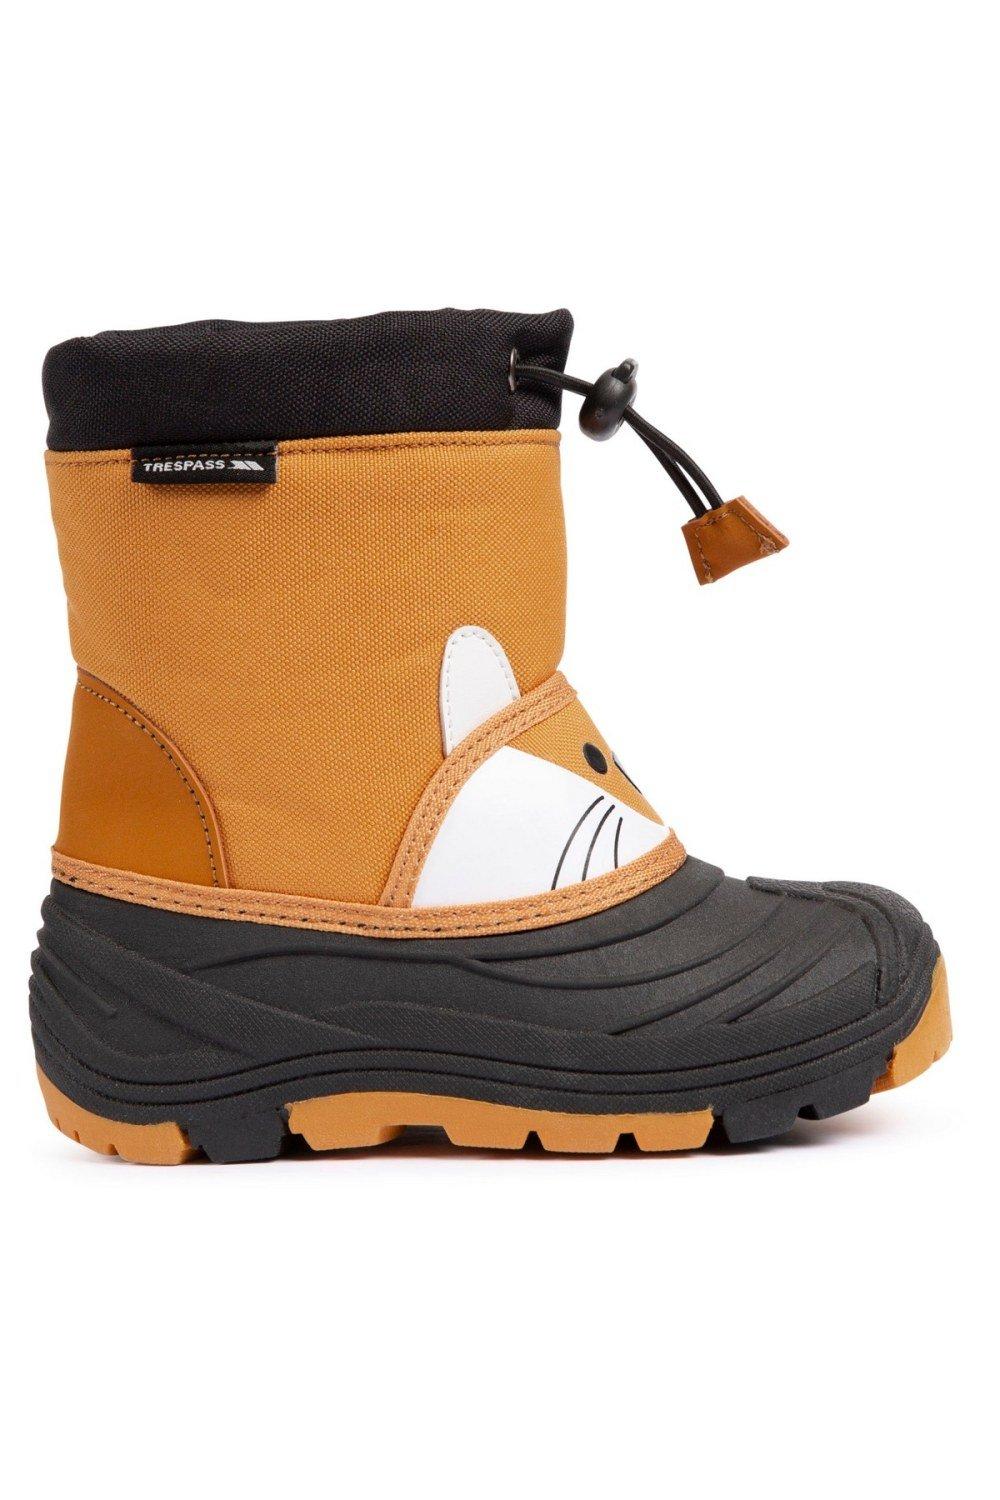 Зимние ботинки Бодхи Trespass, коричневый